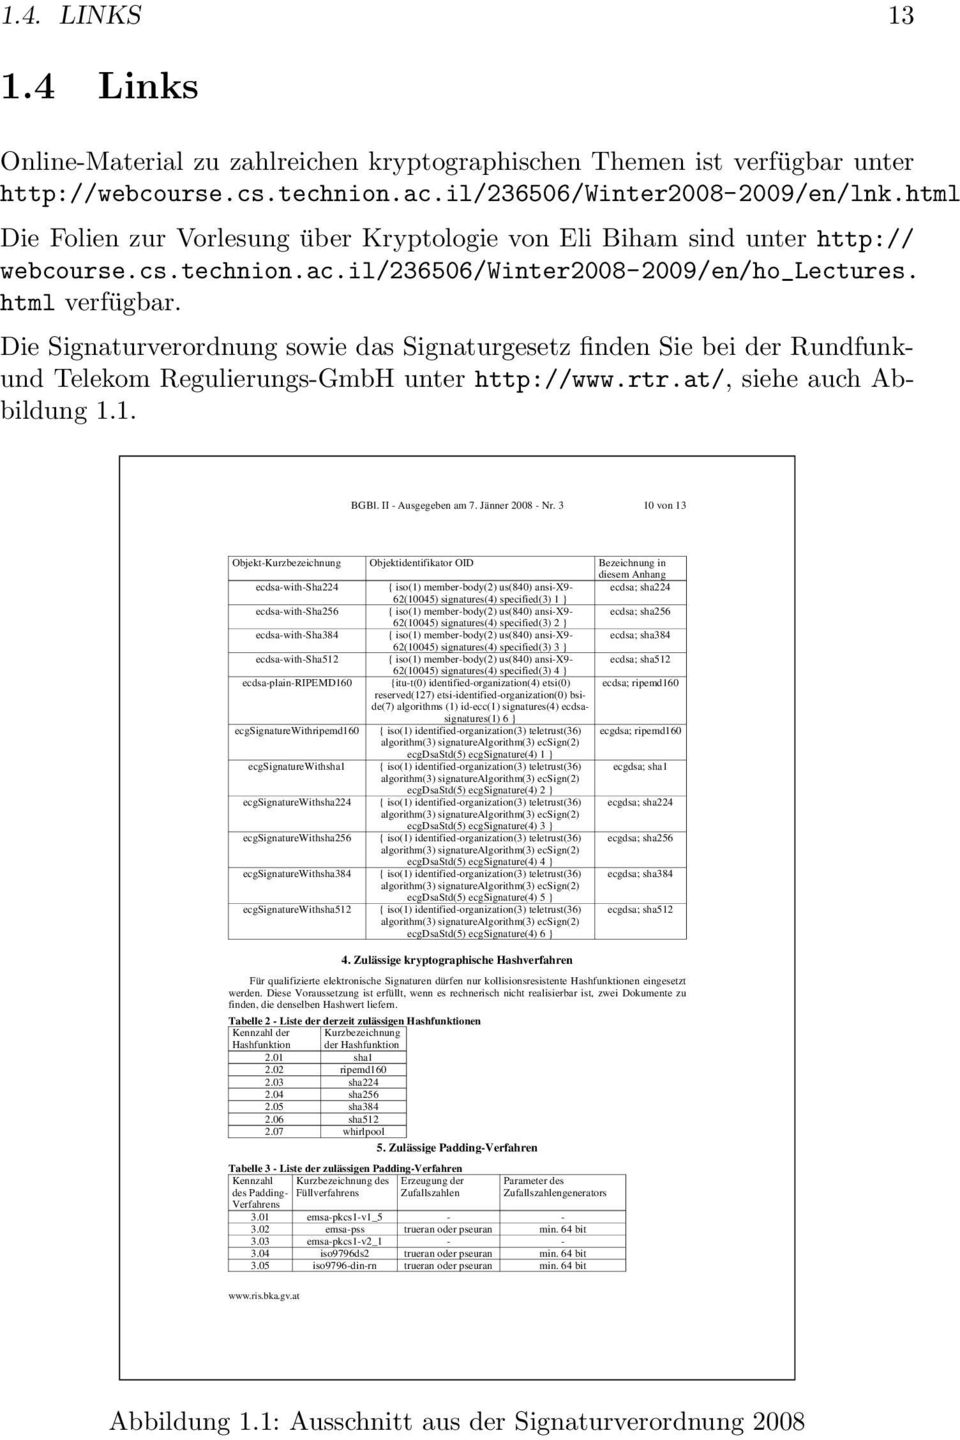 Die Signatuveodnung sowie das Signatugesetz finden Sie bei de Rundfunkund Telekom Regulieungs-GmbH unte http://www.t.at/, siehe auch Abbildung 1.1. BGBl. II - Ausgegeben am 7. Jänne 2008 - N.